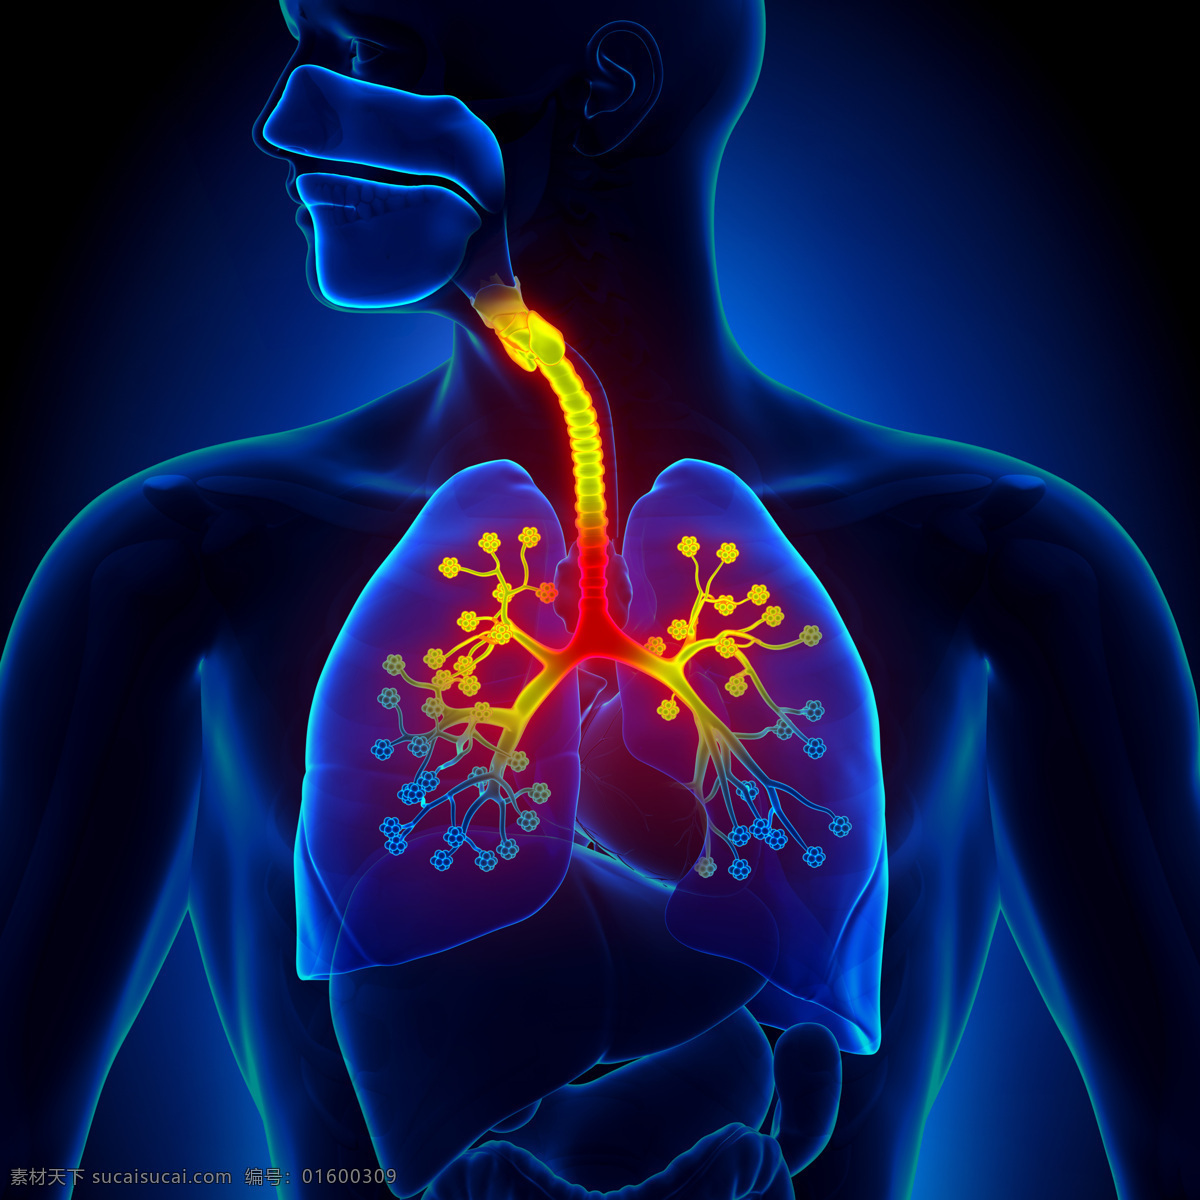 咽喉 心脏 咽喉与心肺 肺部 人体器官 身体 人类身体 绚光身体 其他人物 人物图库 医疗护理 现代科技